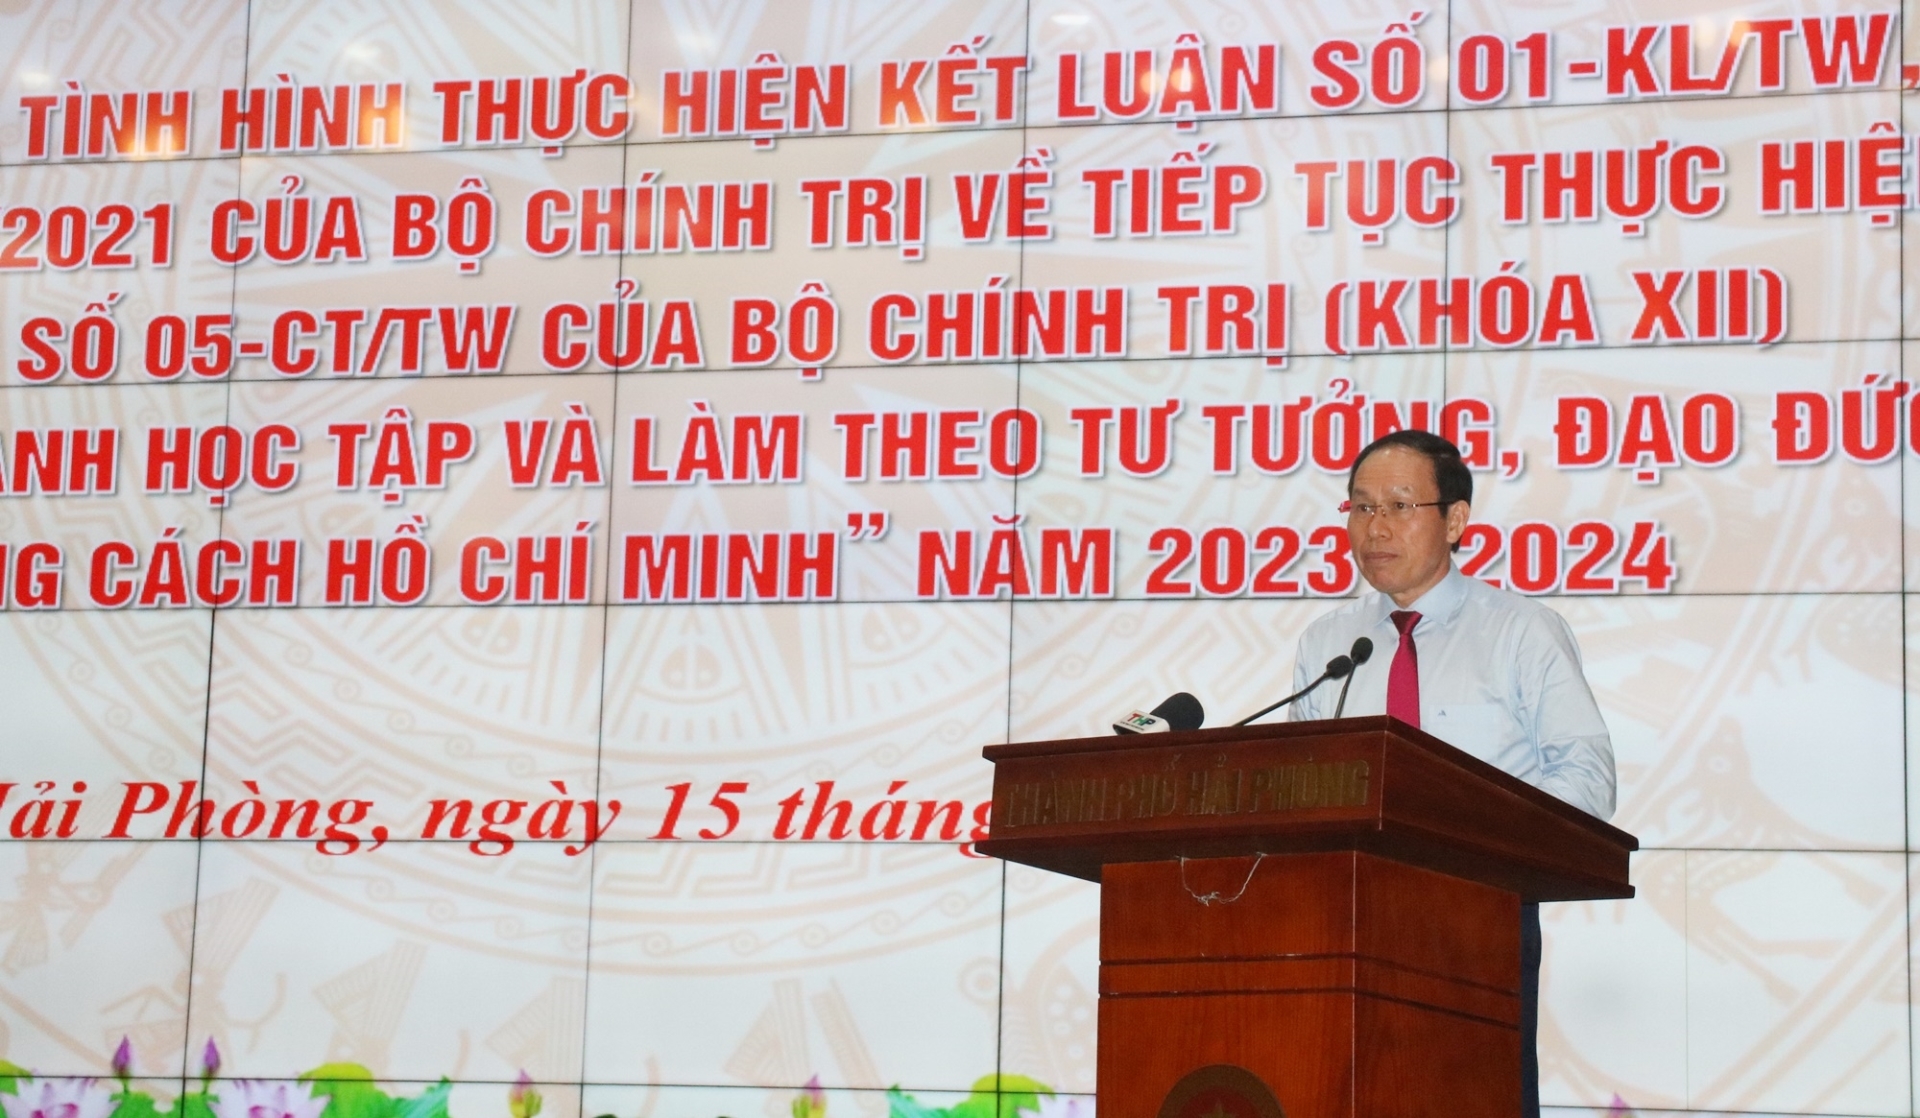 Đồng chí Lê Tiến Châu, Ủy viên Trung ương Đảng, Bí thư Thành ủy Hải Phòng dự và phát biểu chỉ đạo tại Hội nghị.